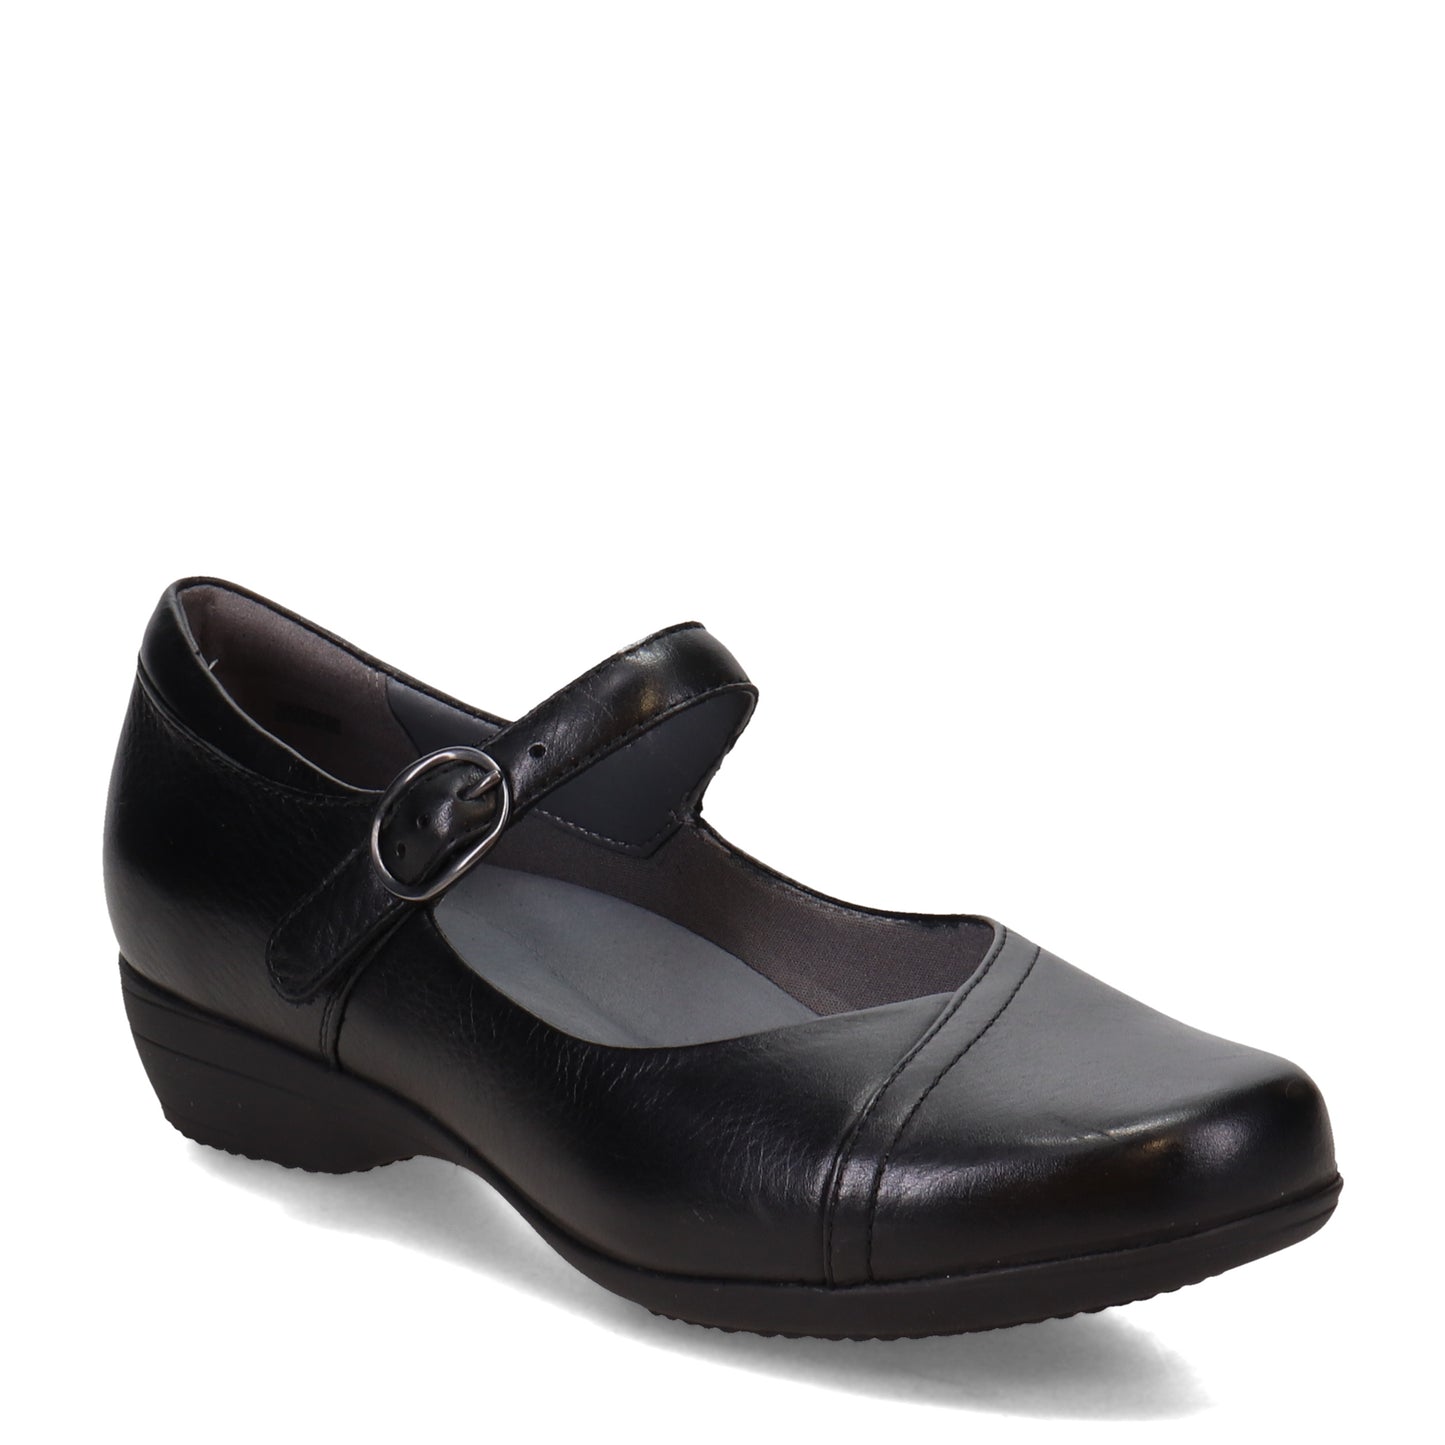 Peltz Shoes  Women's Dansko Fawna Mary Jane - Wide Width Black 5511-020200